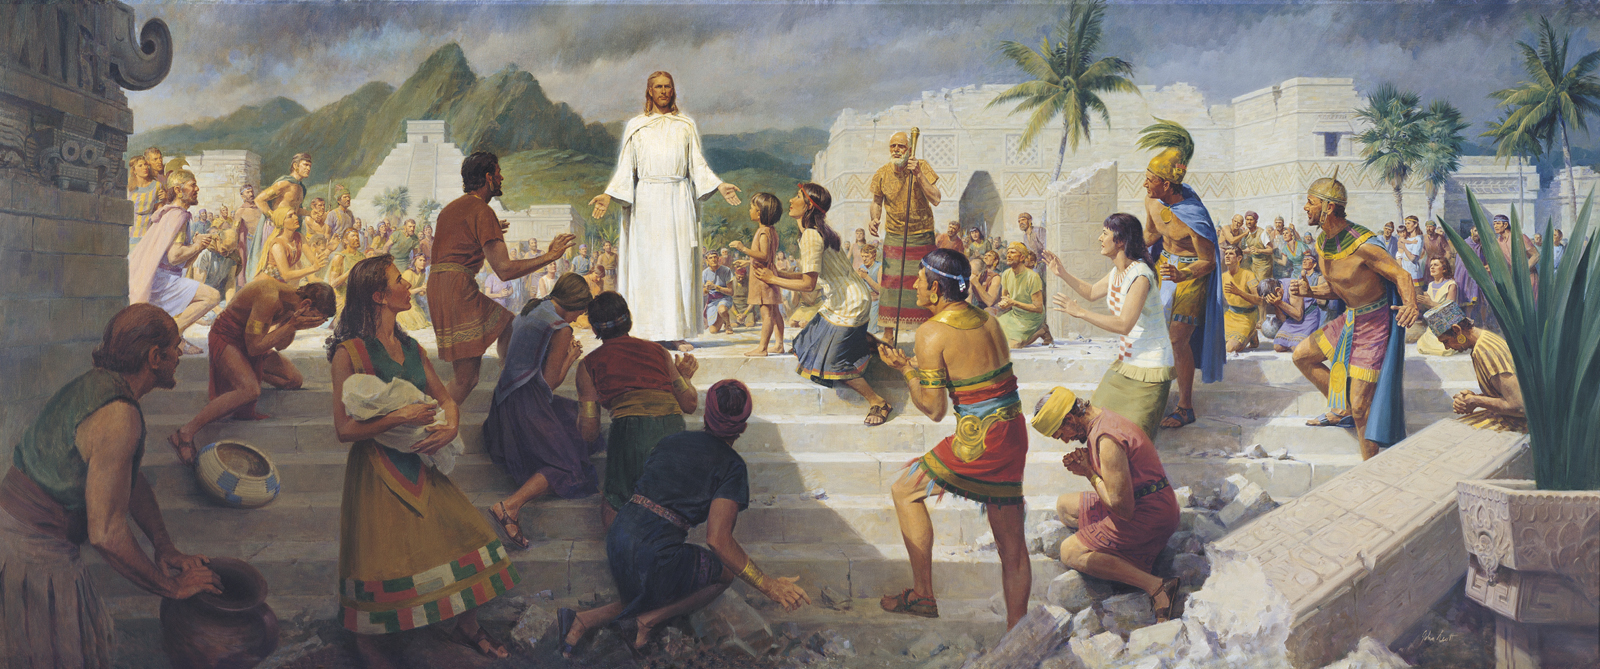 Jesus Teaching in the Western Hemisphere